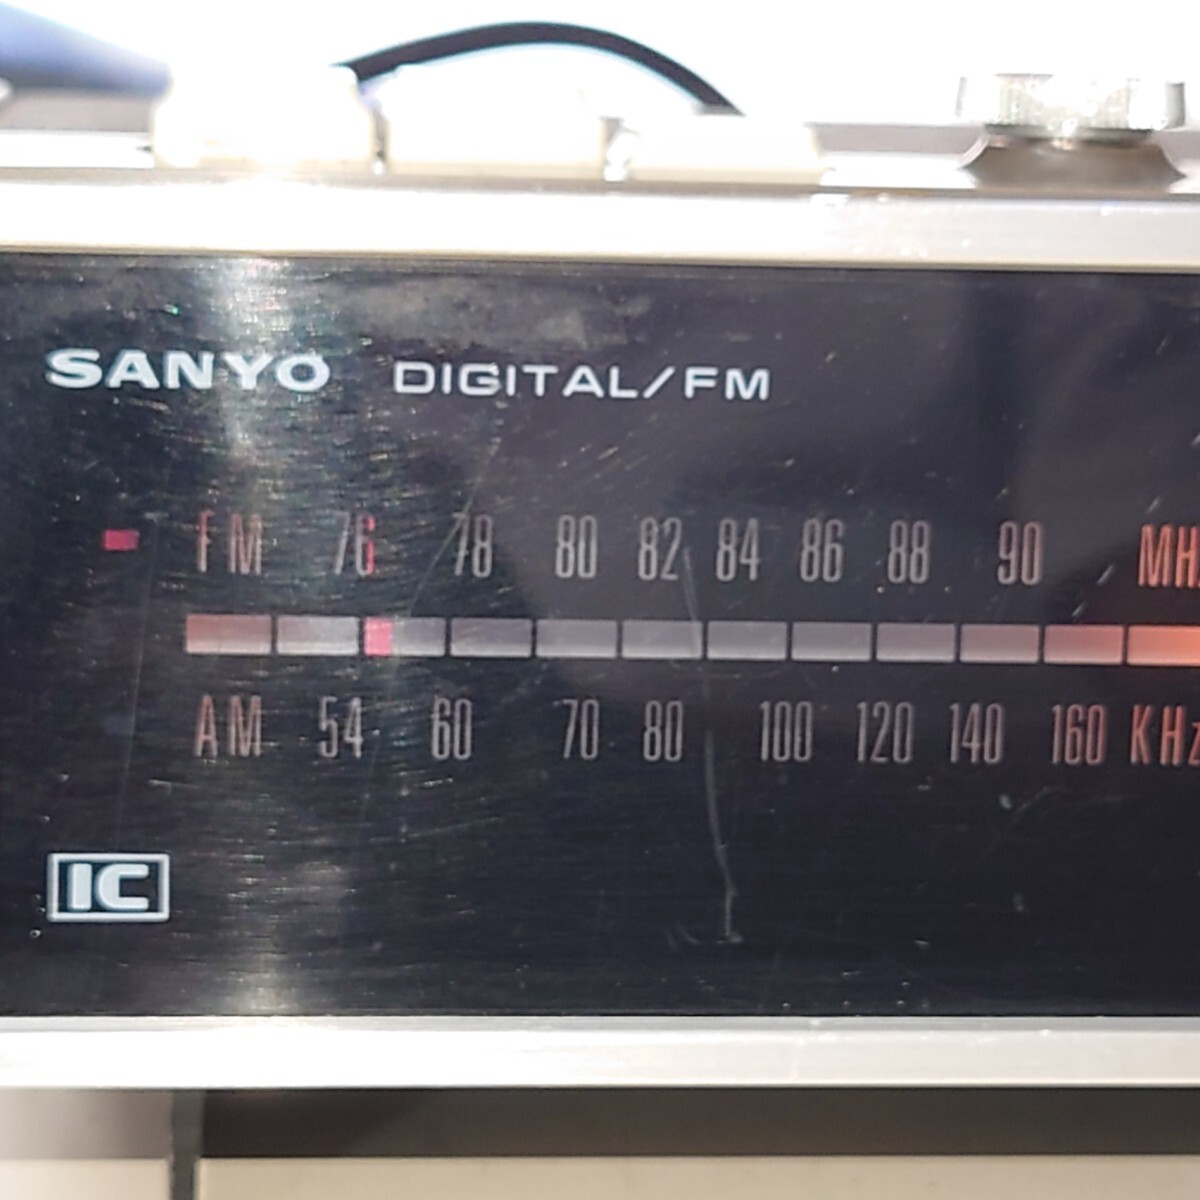 【動確OK】 SANYO デジタル クロック IC ラジオ 10F-T40 パタパタ時計 昭和レトロ DIGITAL CLOCK IC RADIO 60Hz用 クロックラジオの画像8